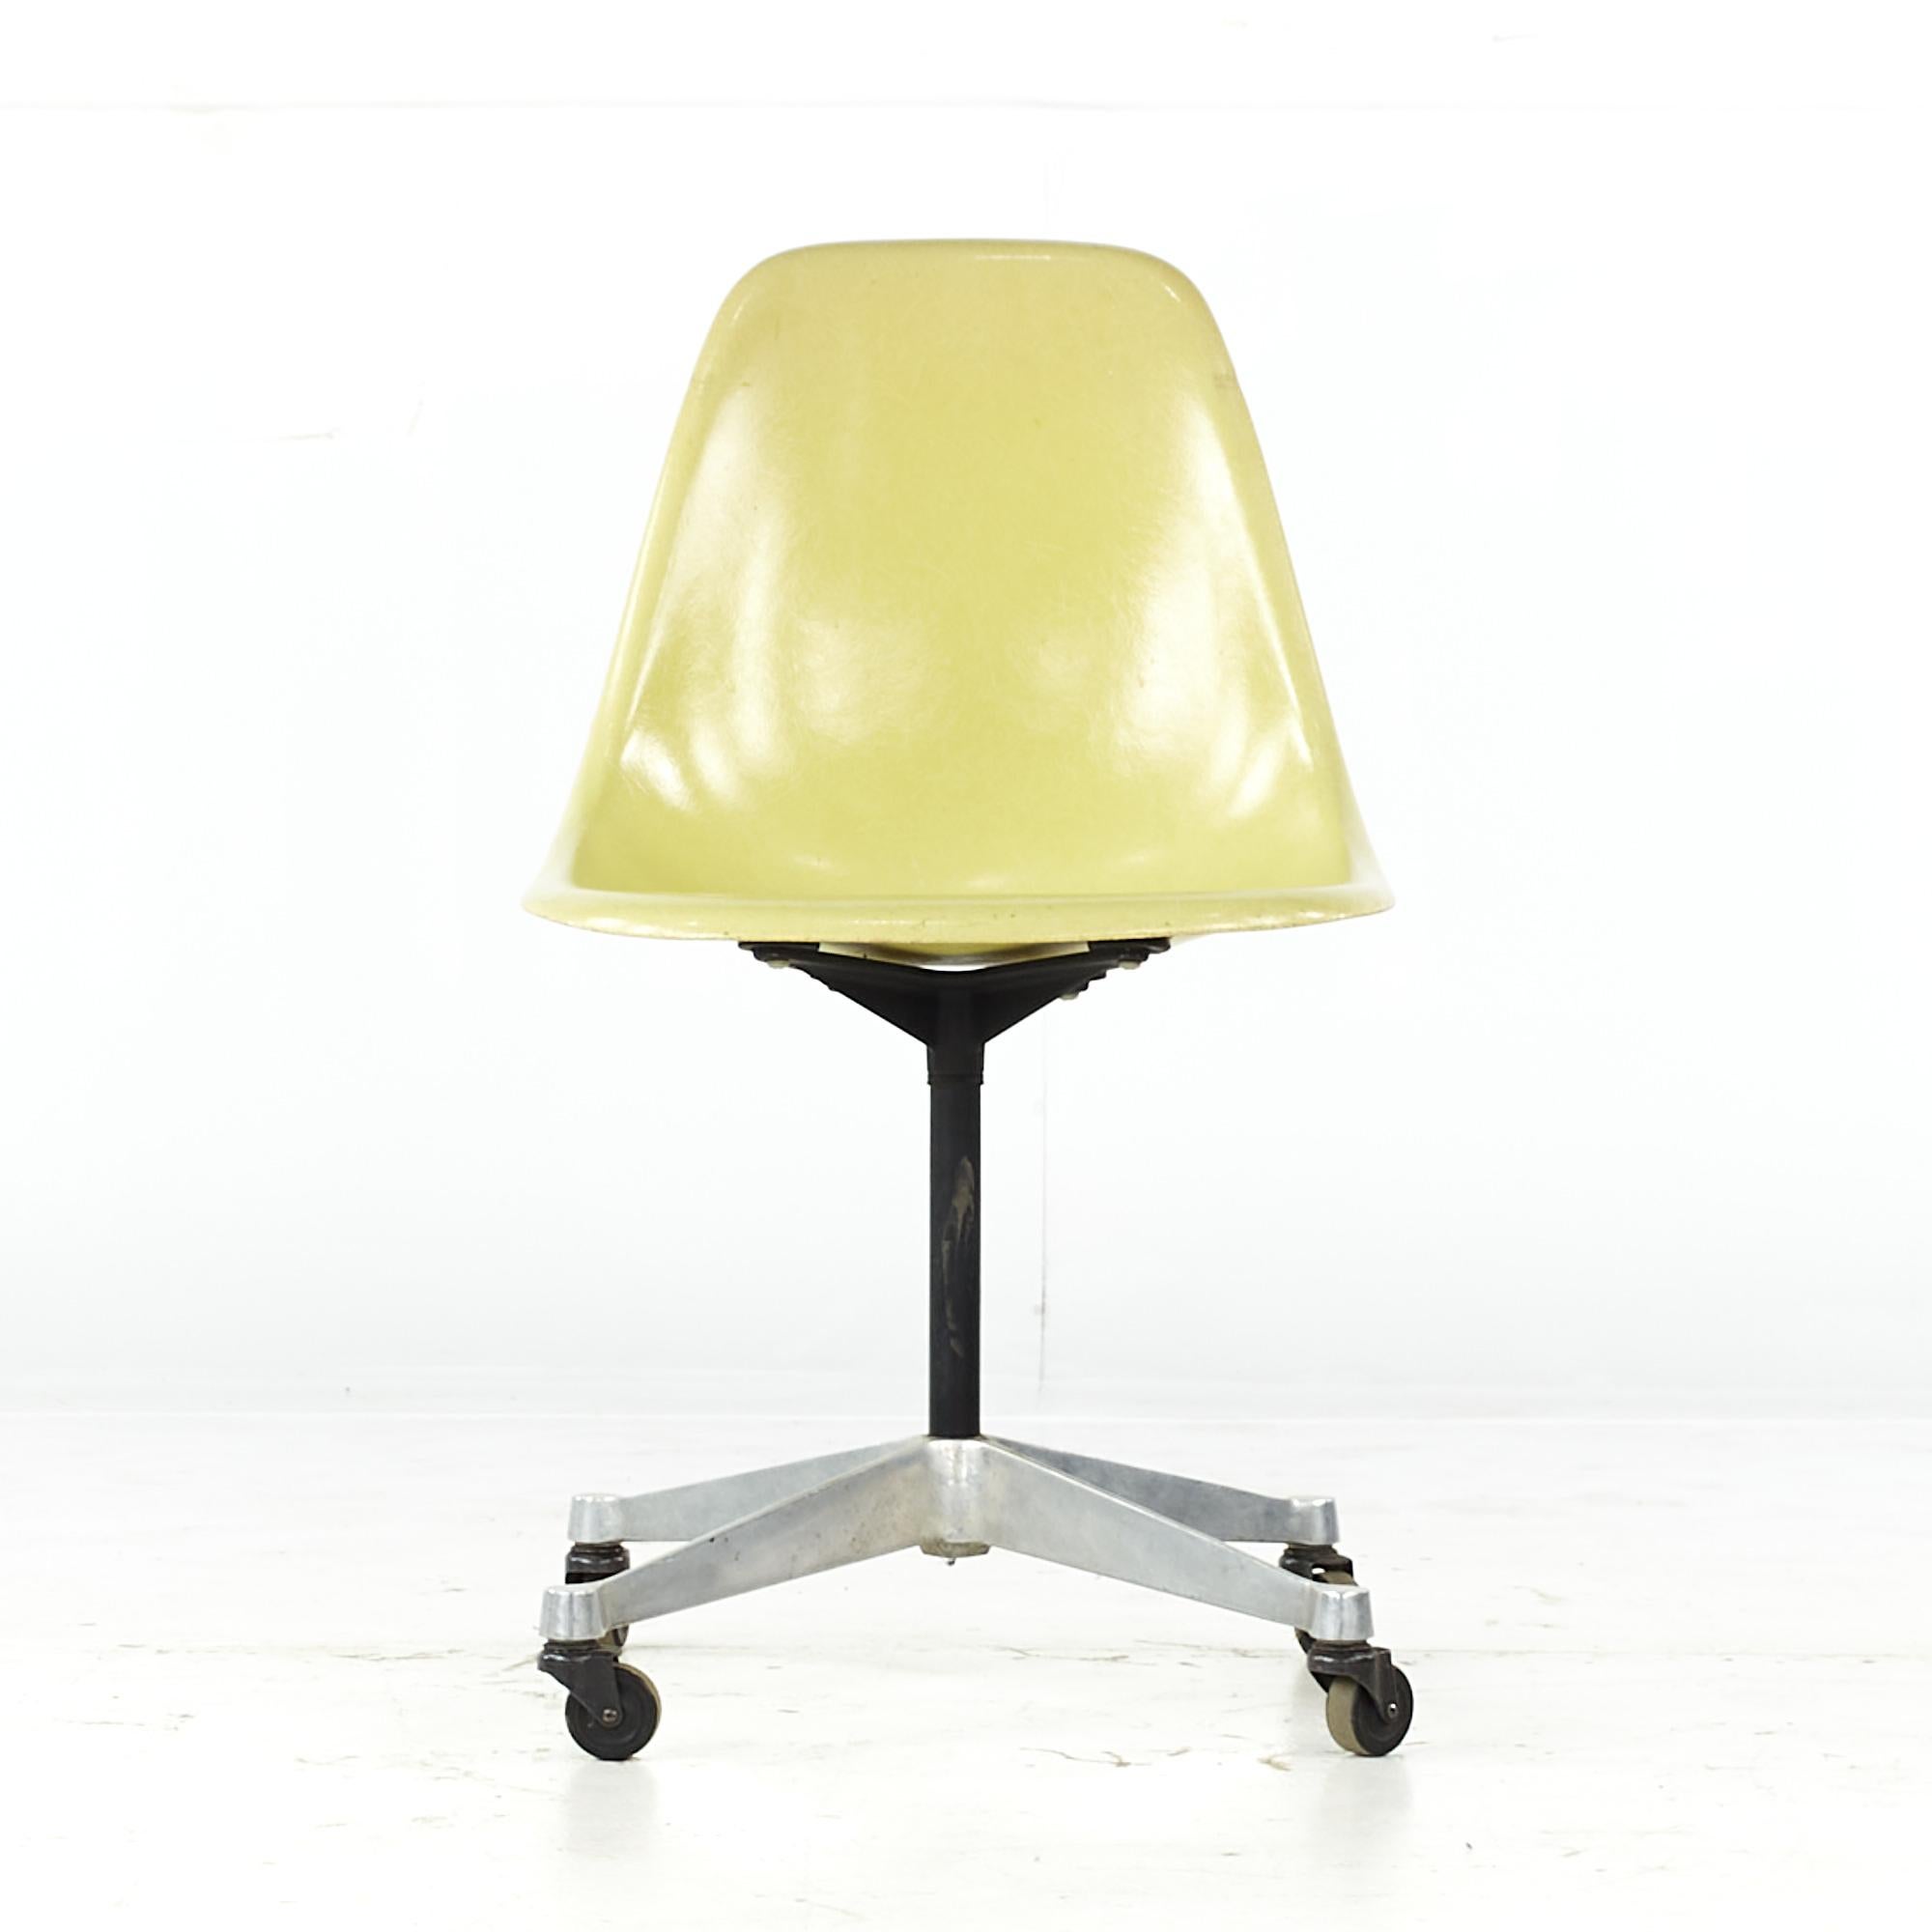 Charles und Ray Eames für Herman Miller, Mitte des Jahrhunderts, Stuhl mit Glasfaser-Rollschalen.

Dieser Stuhl misst: 18,5 breit x 24 tief x 32 hoch, mit einer Sitzhöhe von 17,5 Zoll.

Alle Möbelstücke sind in einem so genannten restaurierten